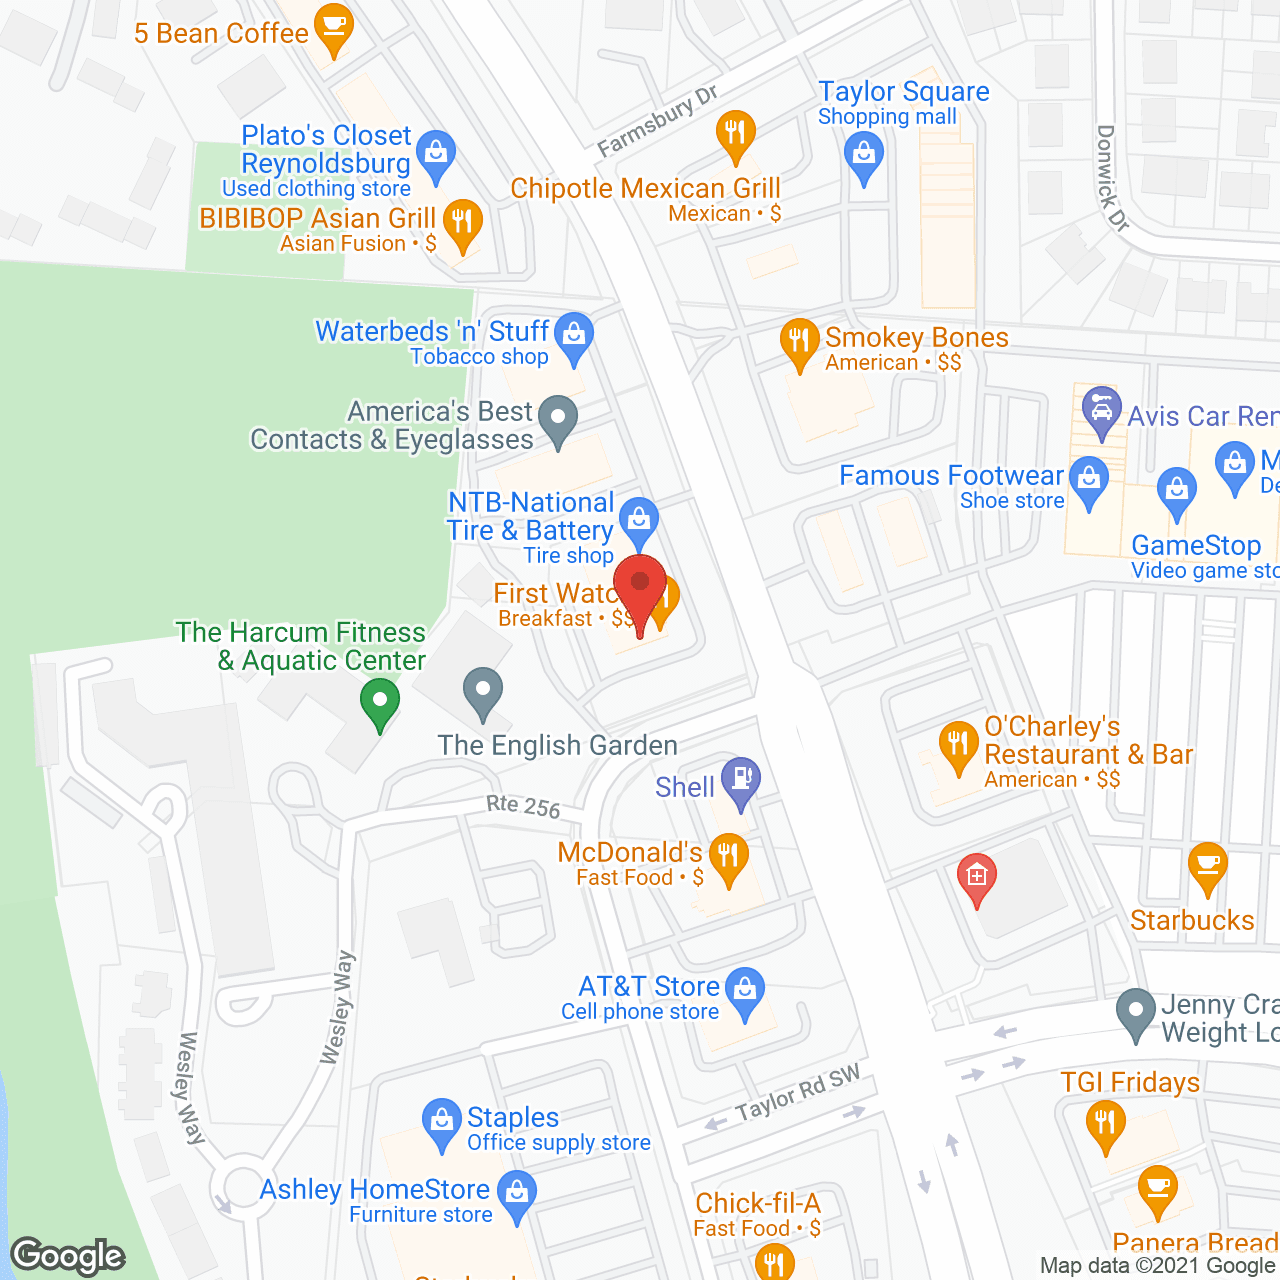 Parkside in google map